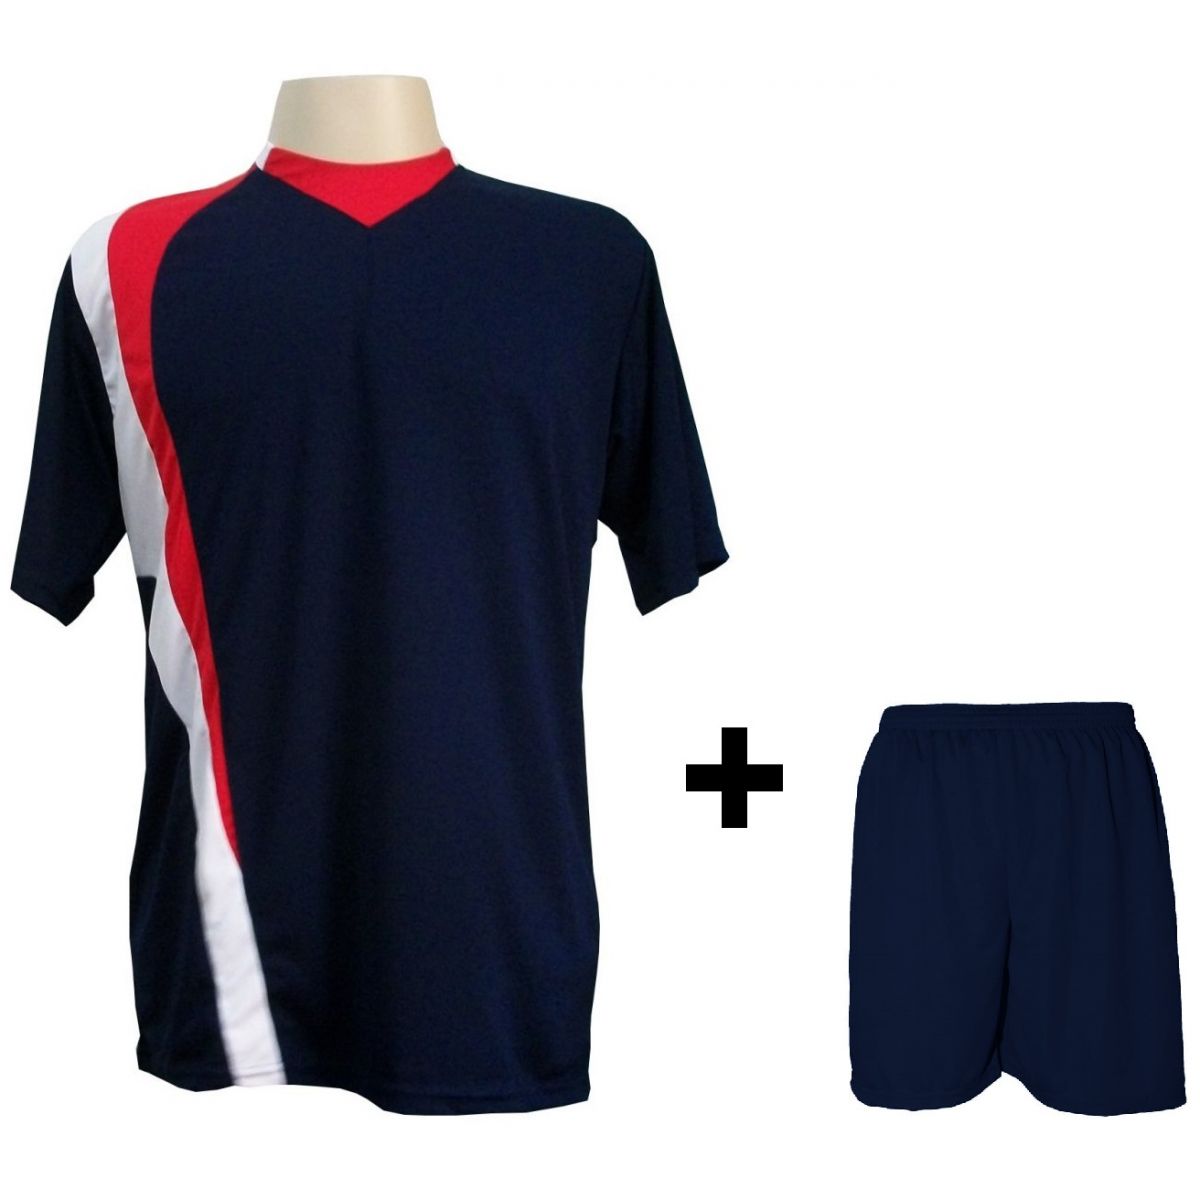 Uniforme Esportivo com 14 camisas modelo PSG Marinho/Vermelho/Branco + 14 calções modelo Madrid Marinho + Brindes